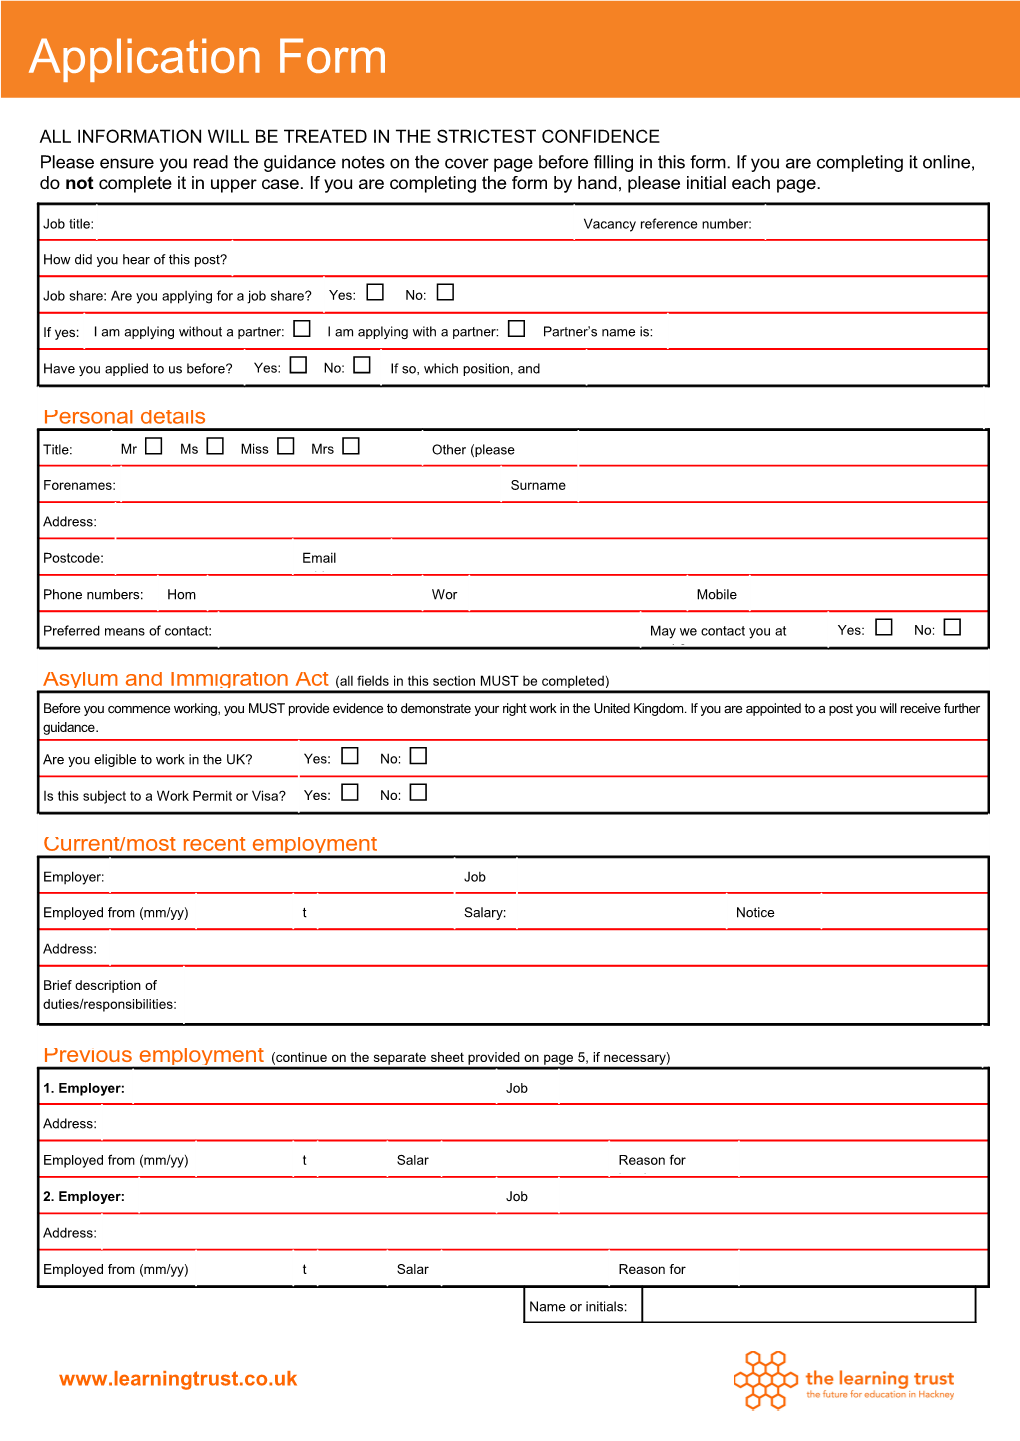 Application Form (Schools) s1